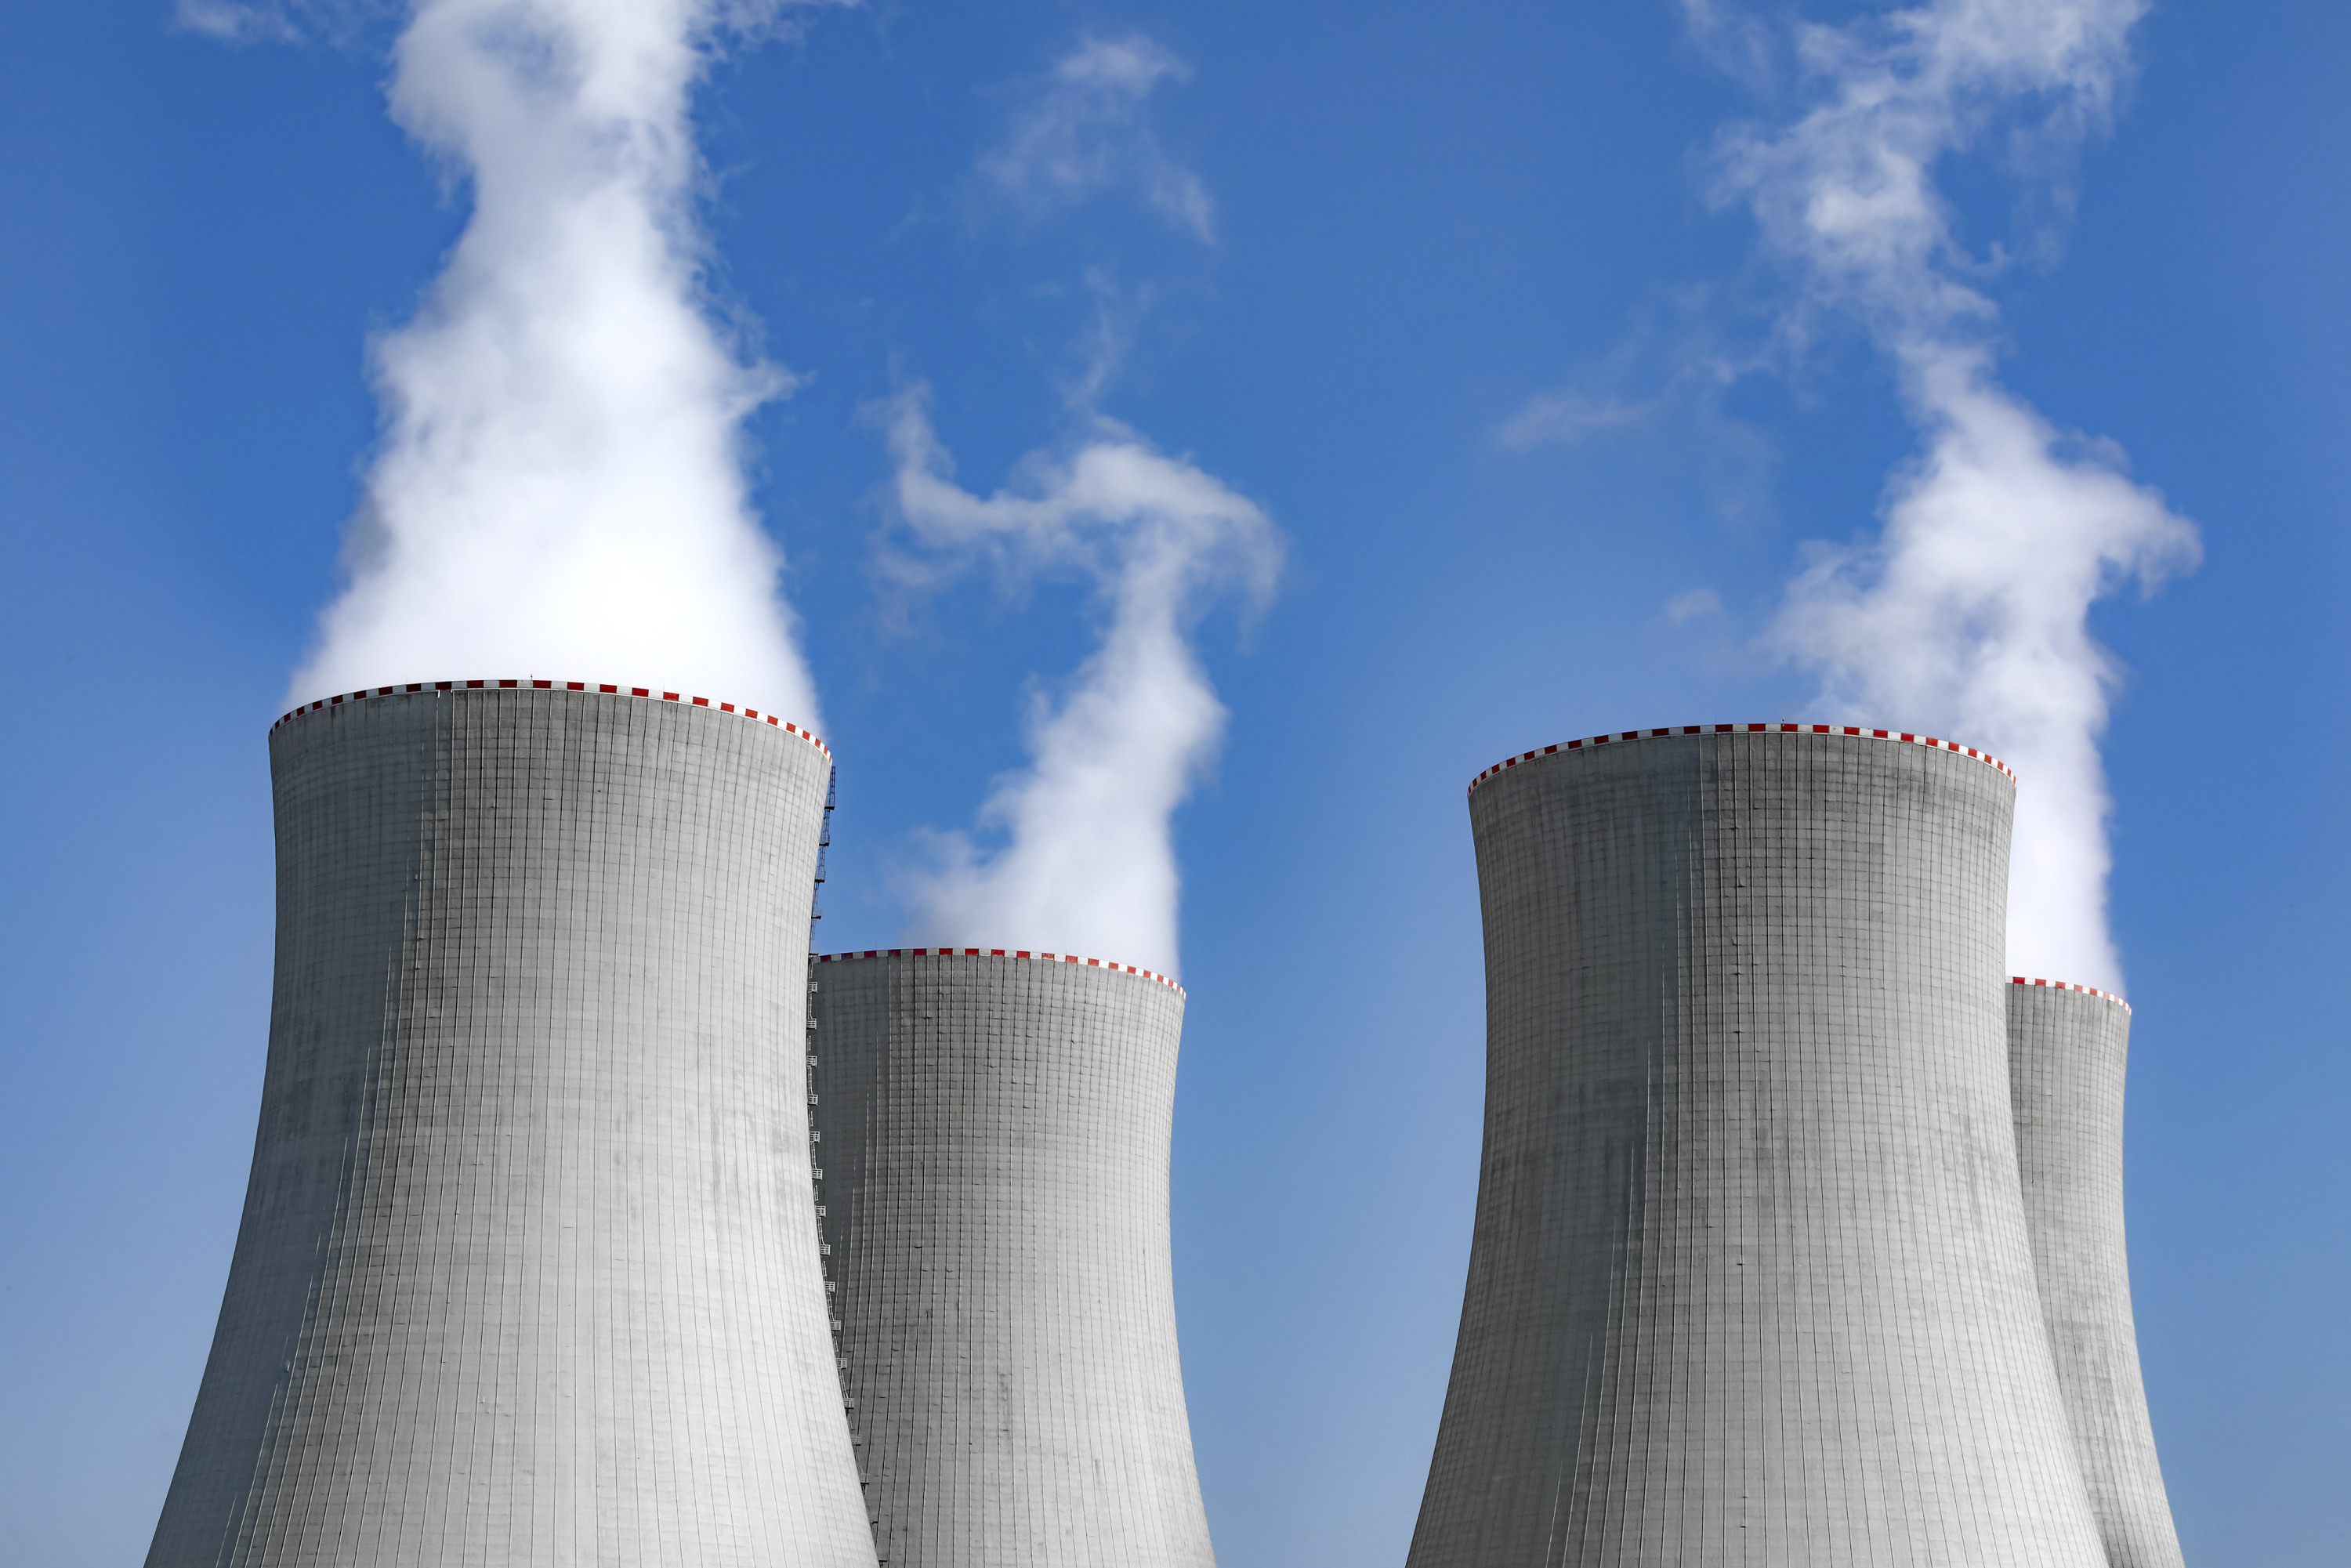 Nucléaire: des contrôles sur les autres réacteurs peut-être nécessaires après l'arrêt de Chooz, selon l'IRSN